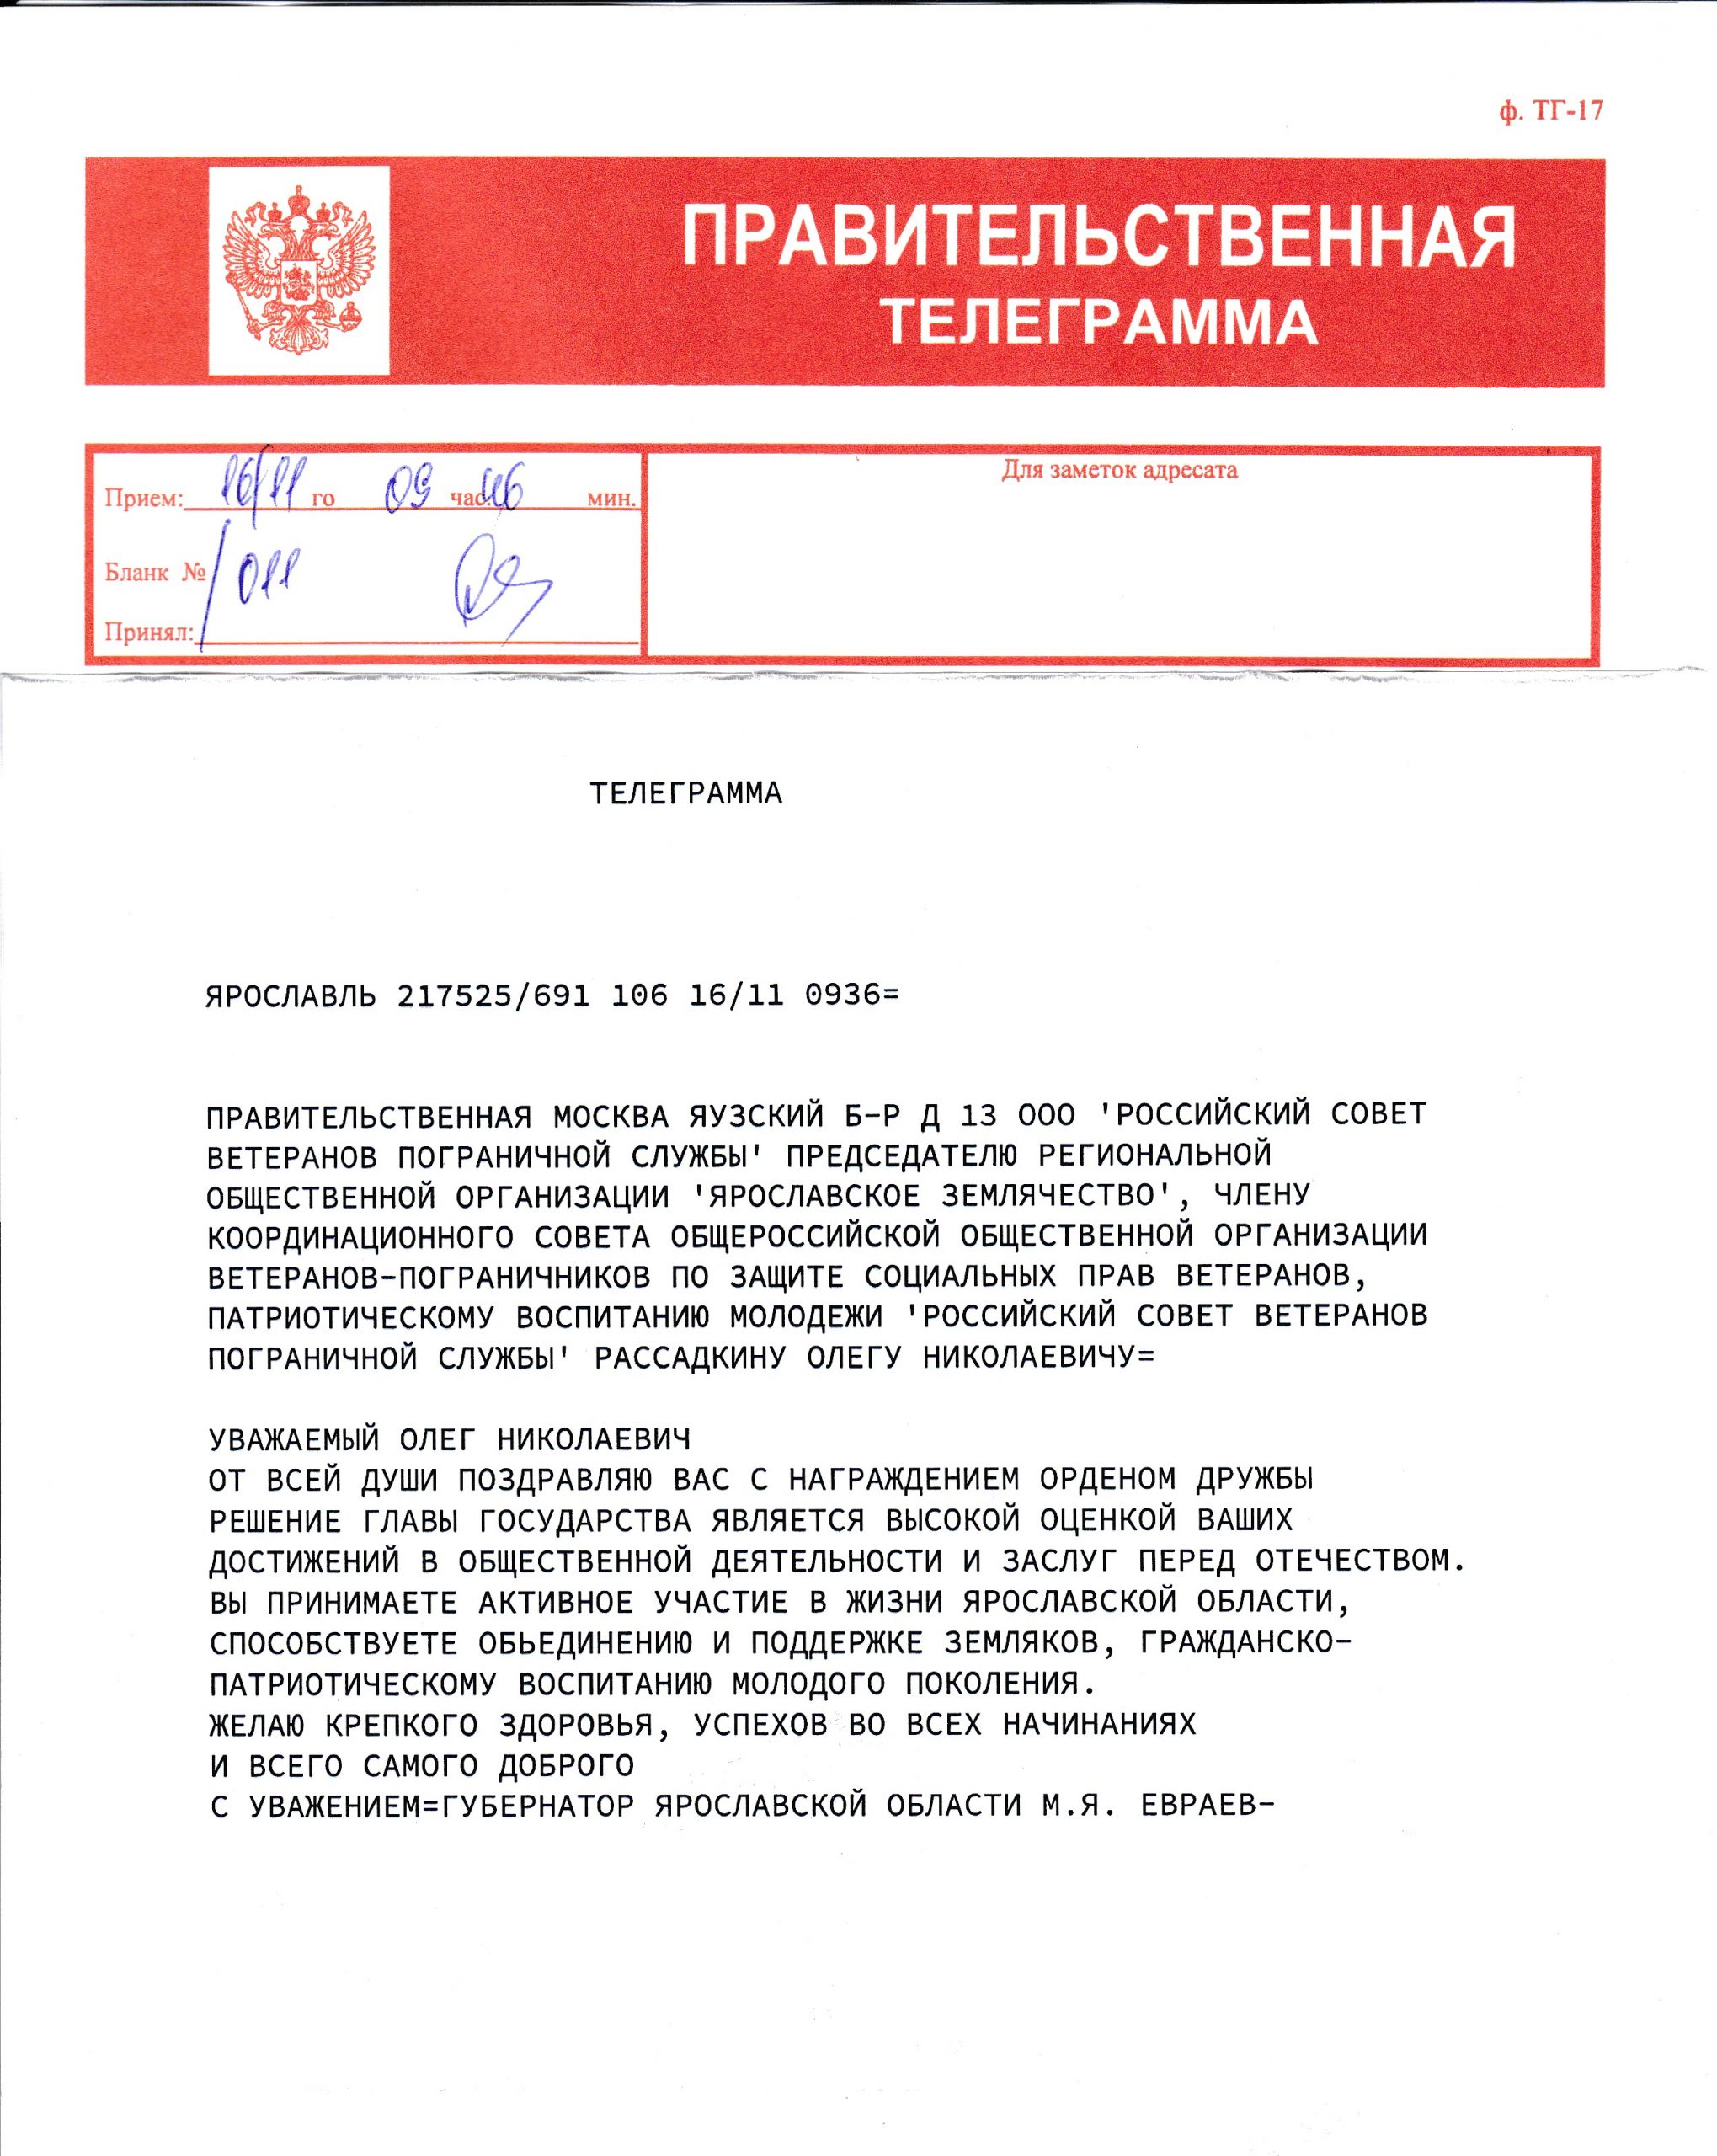 Правительственная телеграмма от губернатора Ярославской области М.Я.Евраева